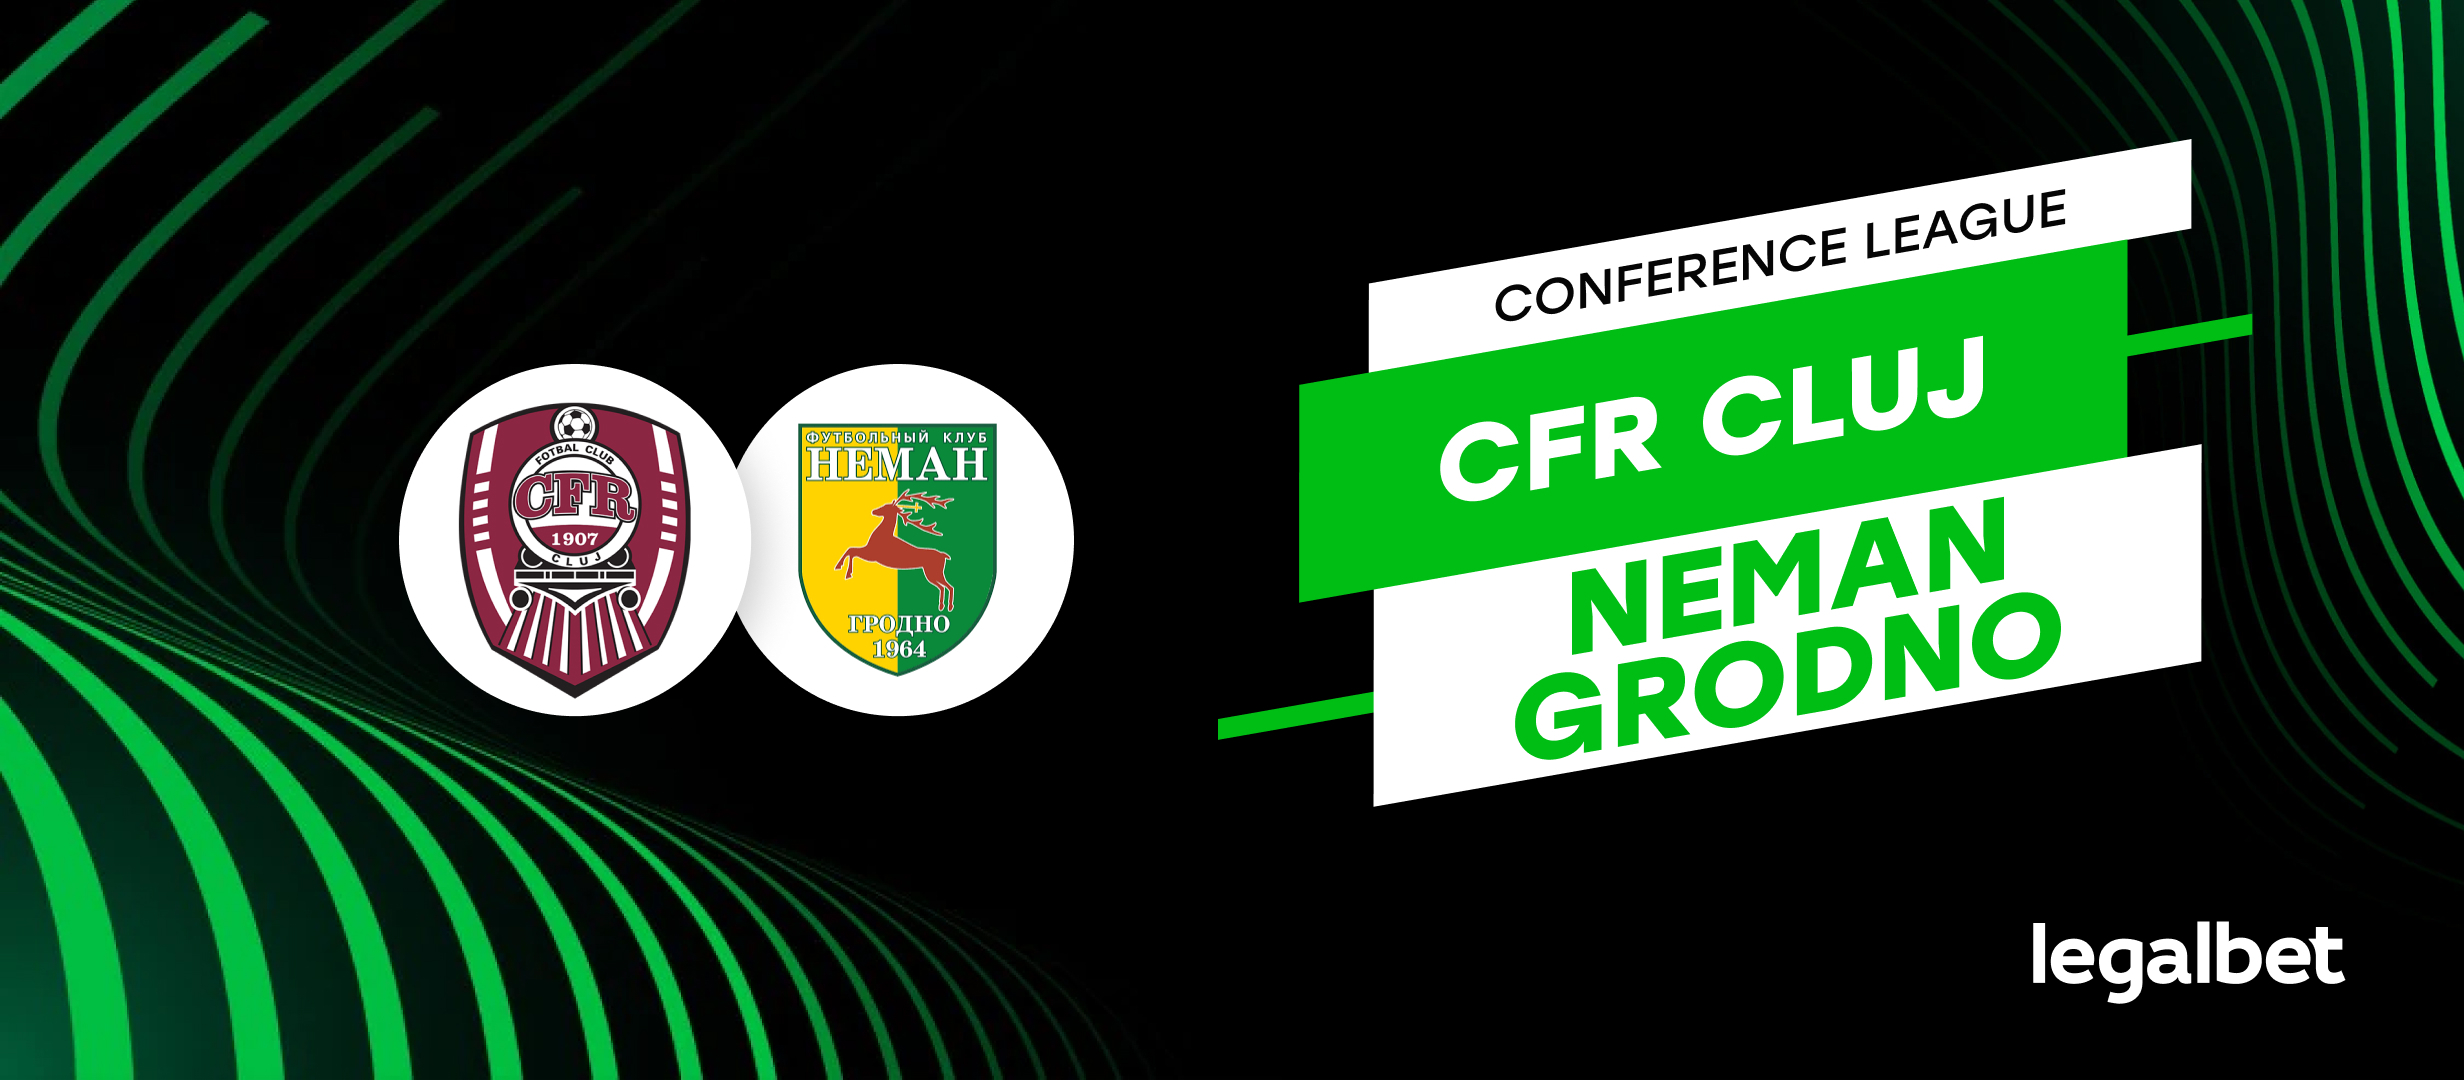 CFR Cluj - Neman Grodno, ponturi la pariuri turul doi preliminar al Conference League